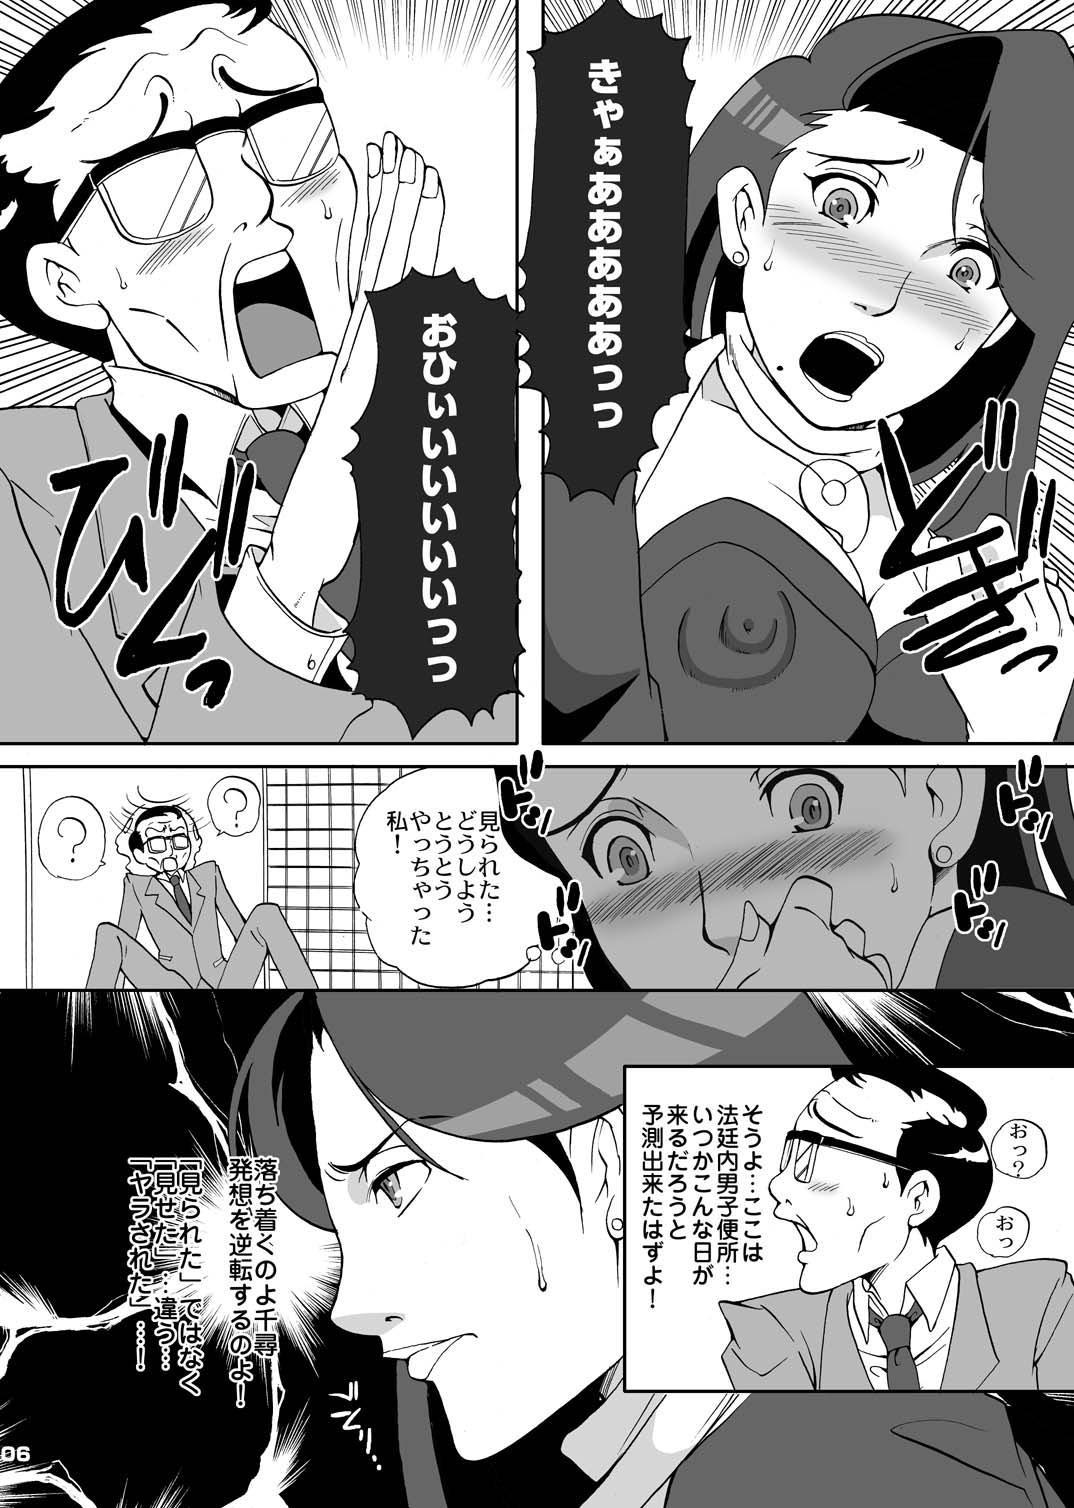 Cocksucking Gyakuten Ranbu - Ace attorney Vip - Page 6